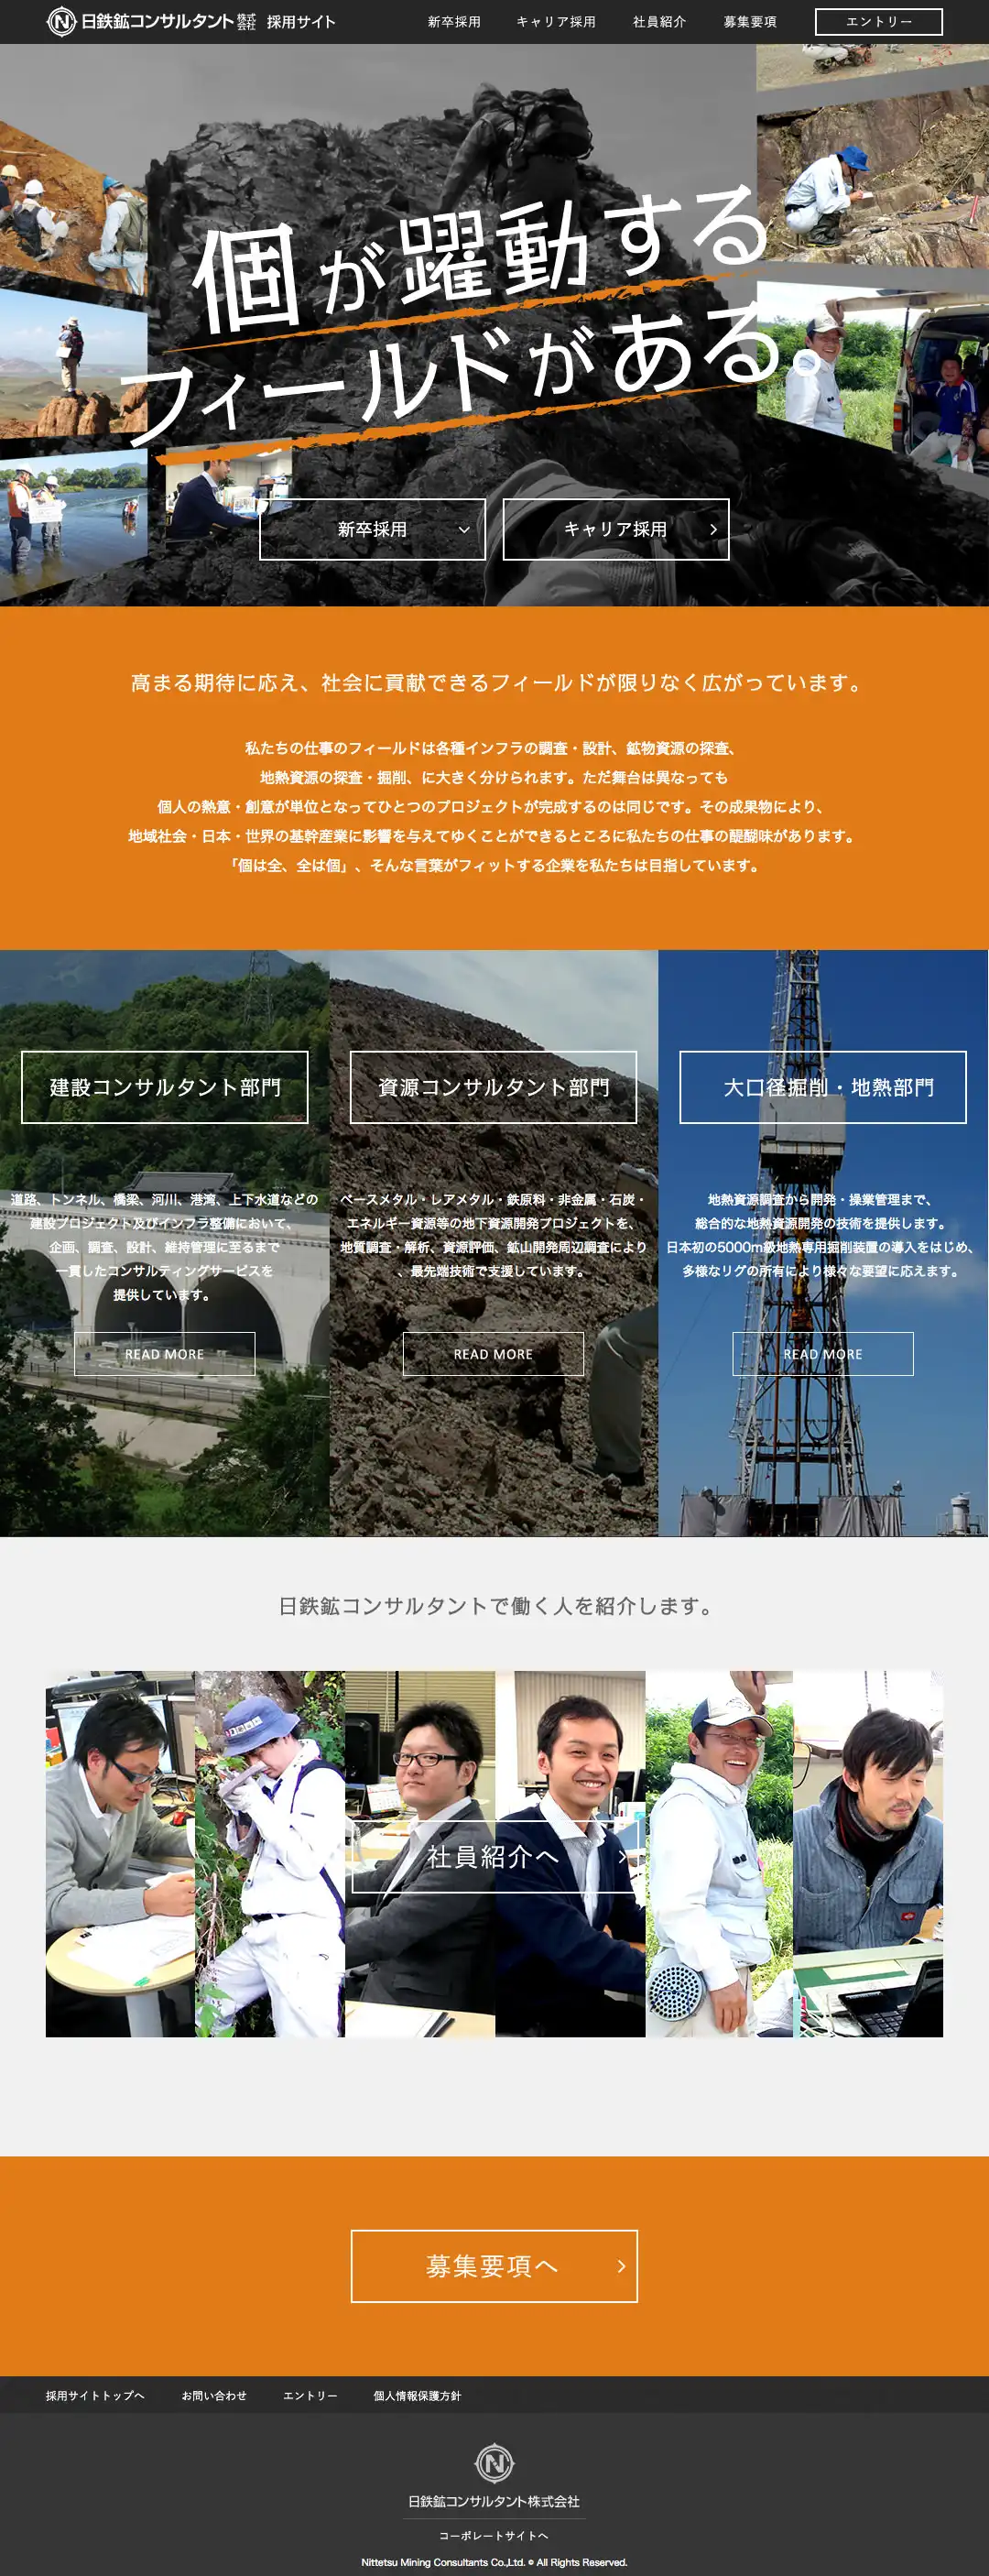 日鉄鉱コンサルタント株式会社
採用特設サイト